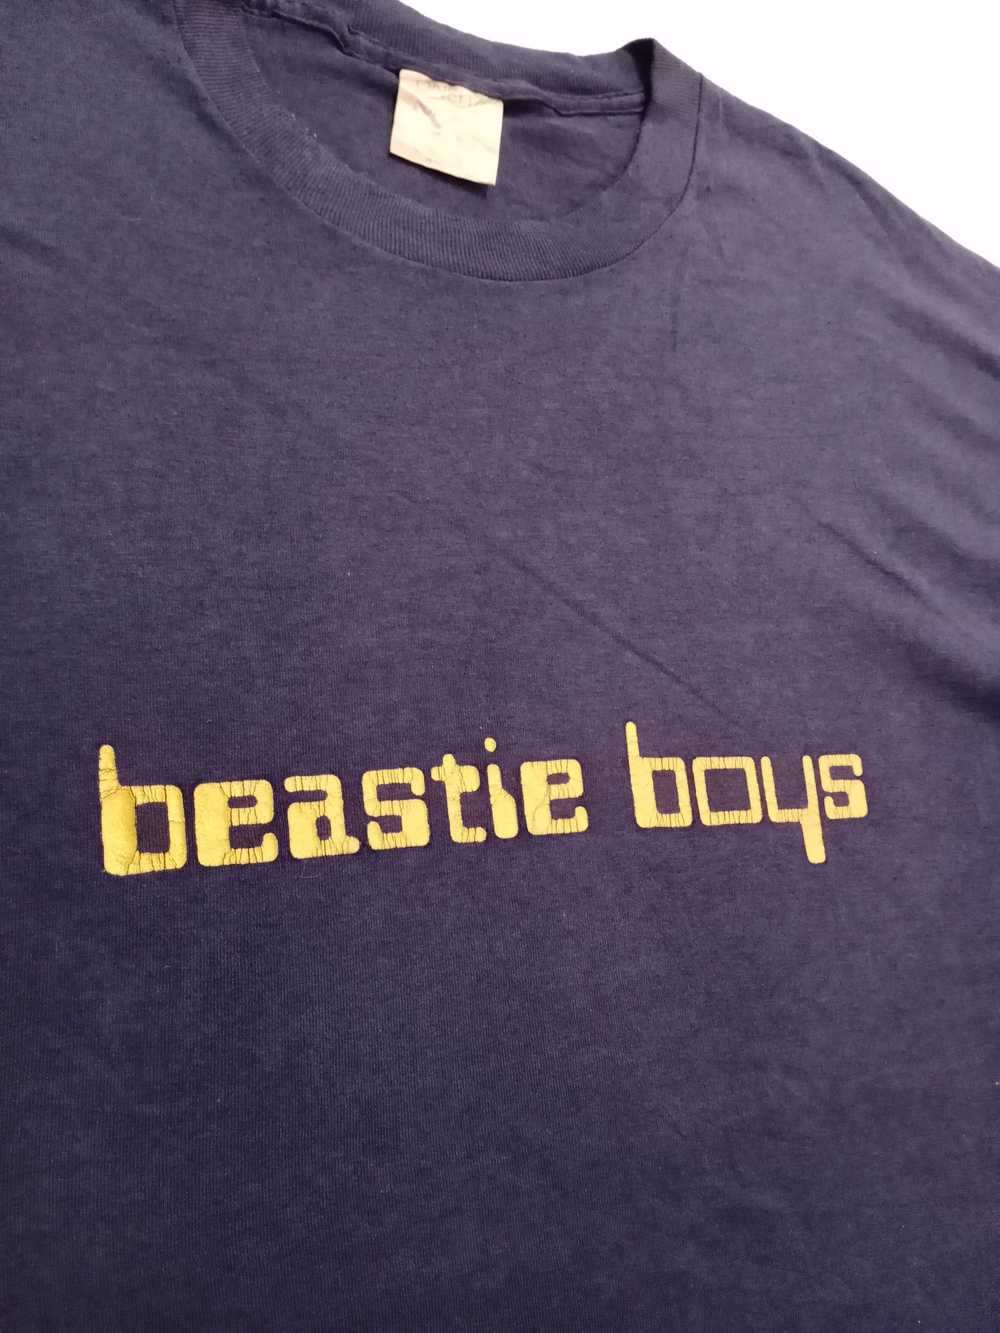 Band Tees × Rap Tees × Vintage Vintage 90s Beasti… - image 7